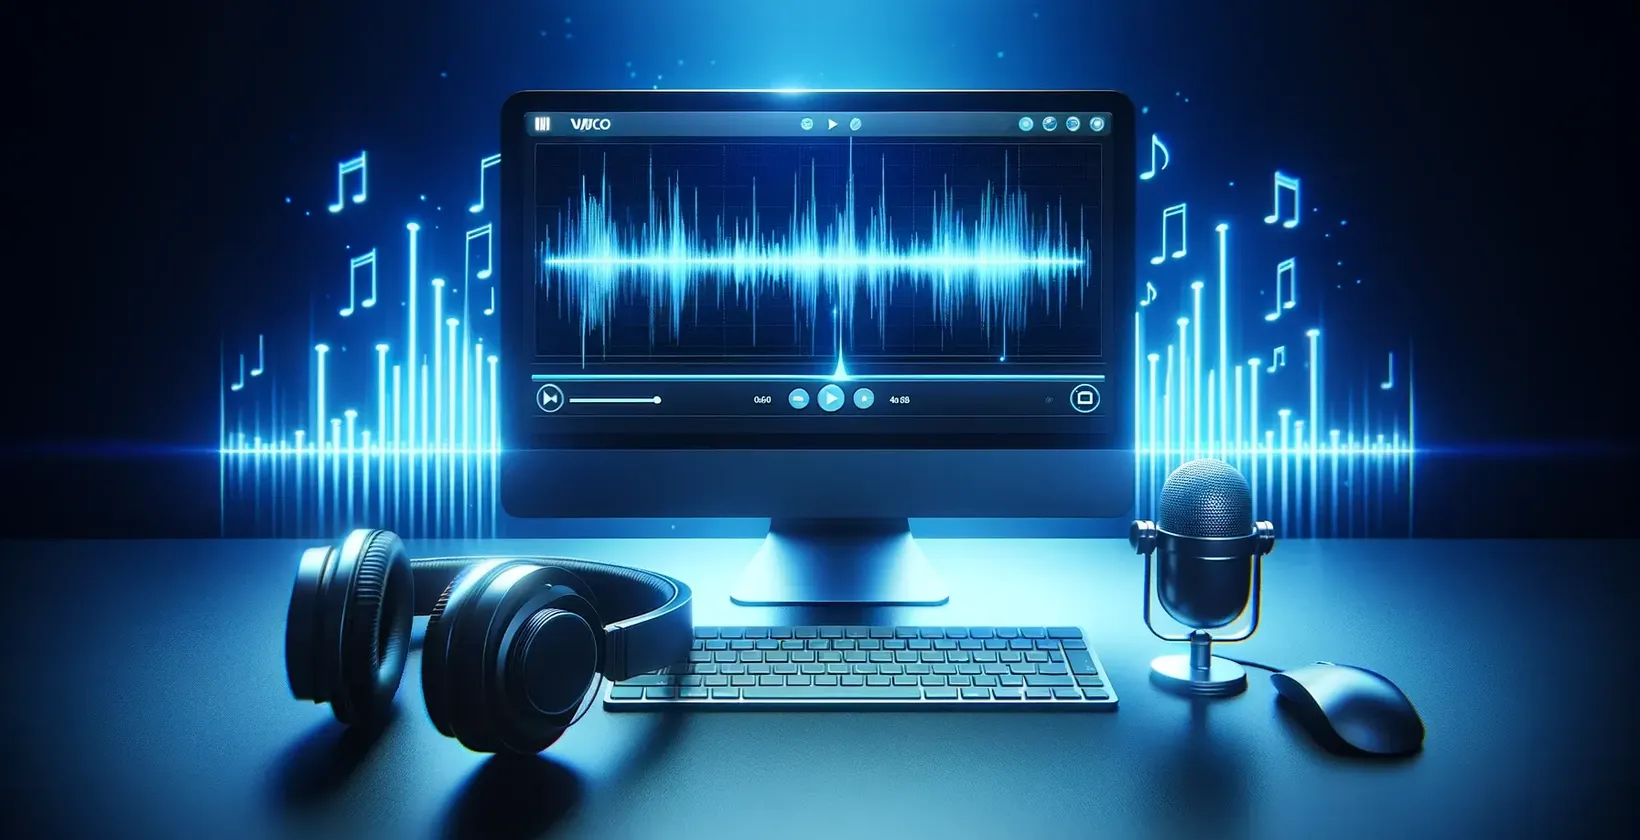 Bilgisayar, kulaklık ve masa üstü mikrofon içeren dijital bir çalışma alanında yer alan otomatik transkripsiyon yazılımı.